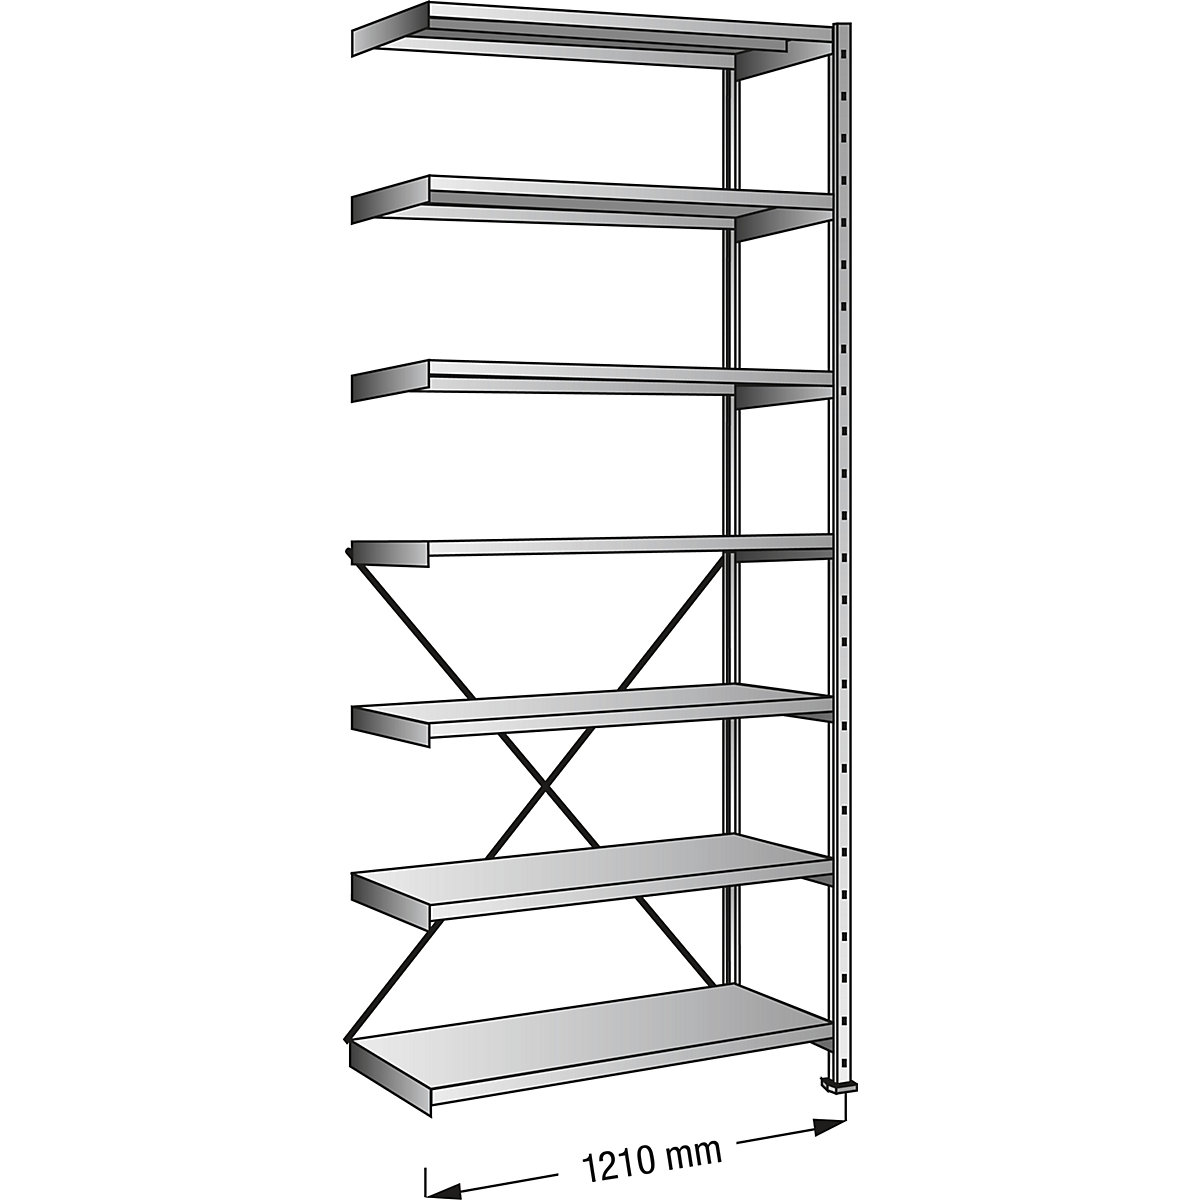 Boltless shelving unit, zinc plated, 7 shelves, height 2640 mm, shelf width 1200 mm, depth 500 mm, extension shelf unit